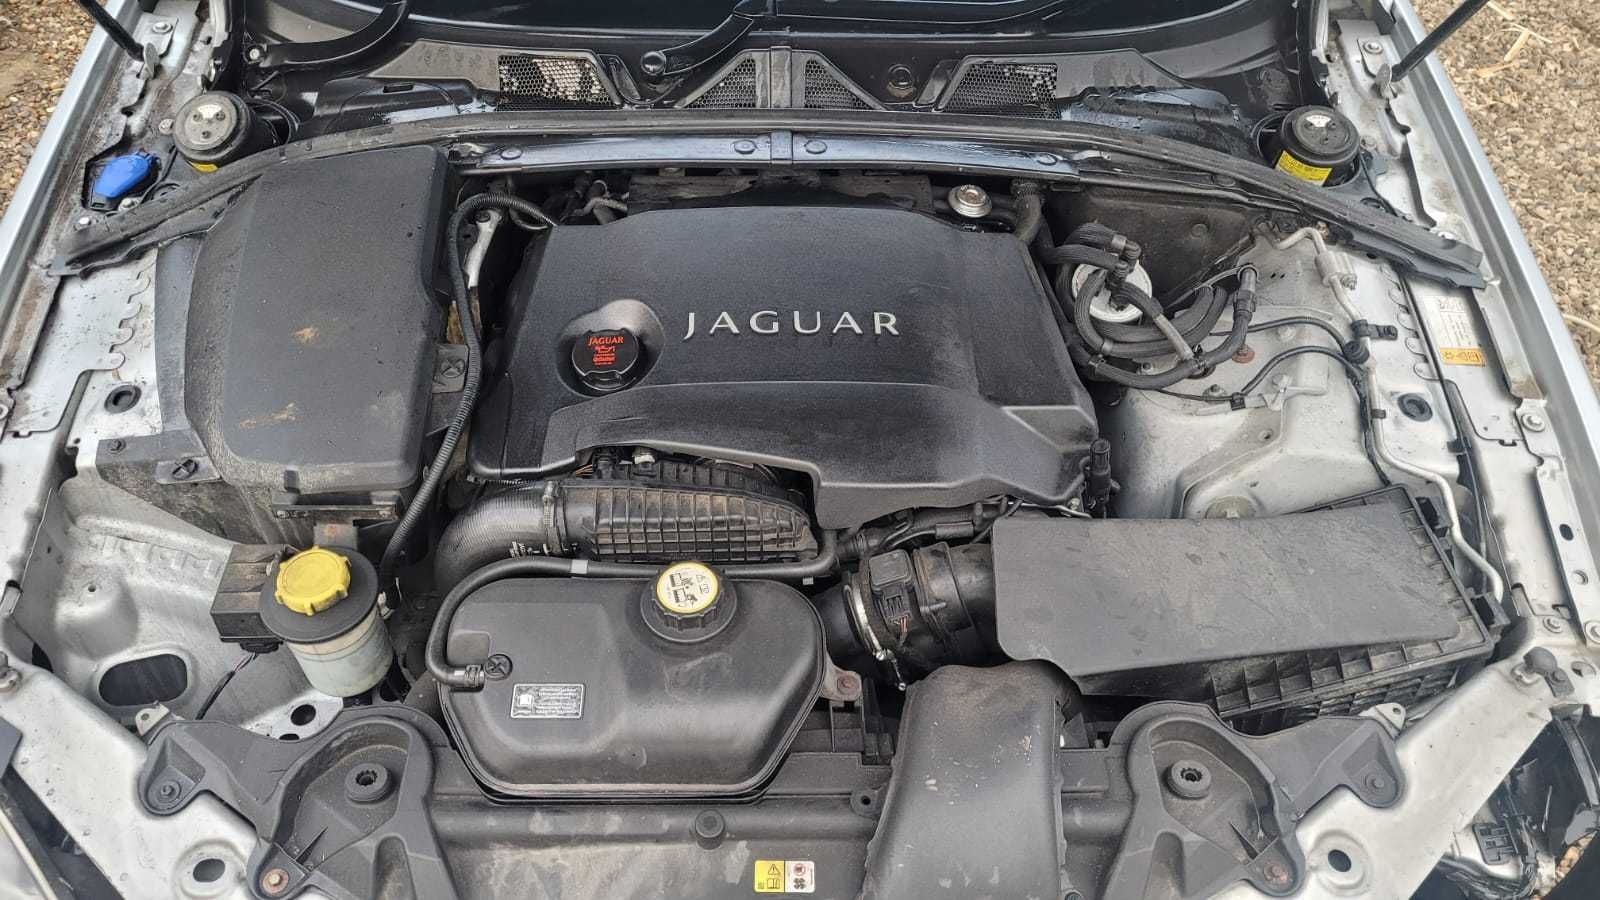 Motor Land Rover - Jaguar 3.0 | 306DT | EURO 5 | Cod motor 306DT